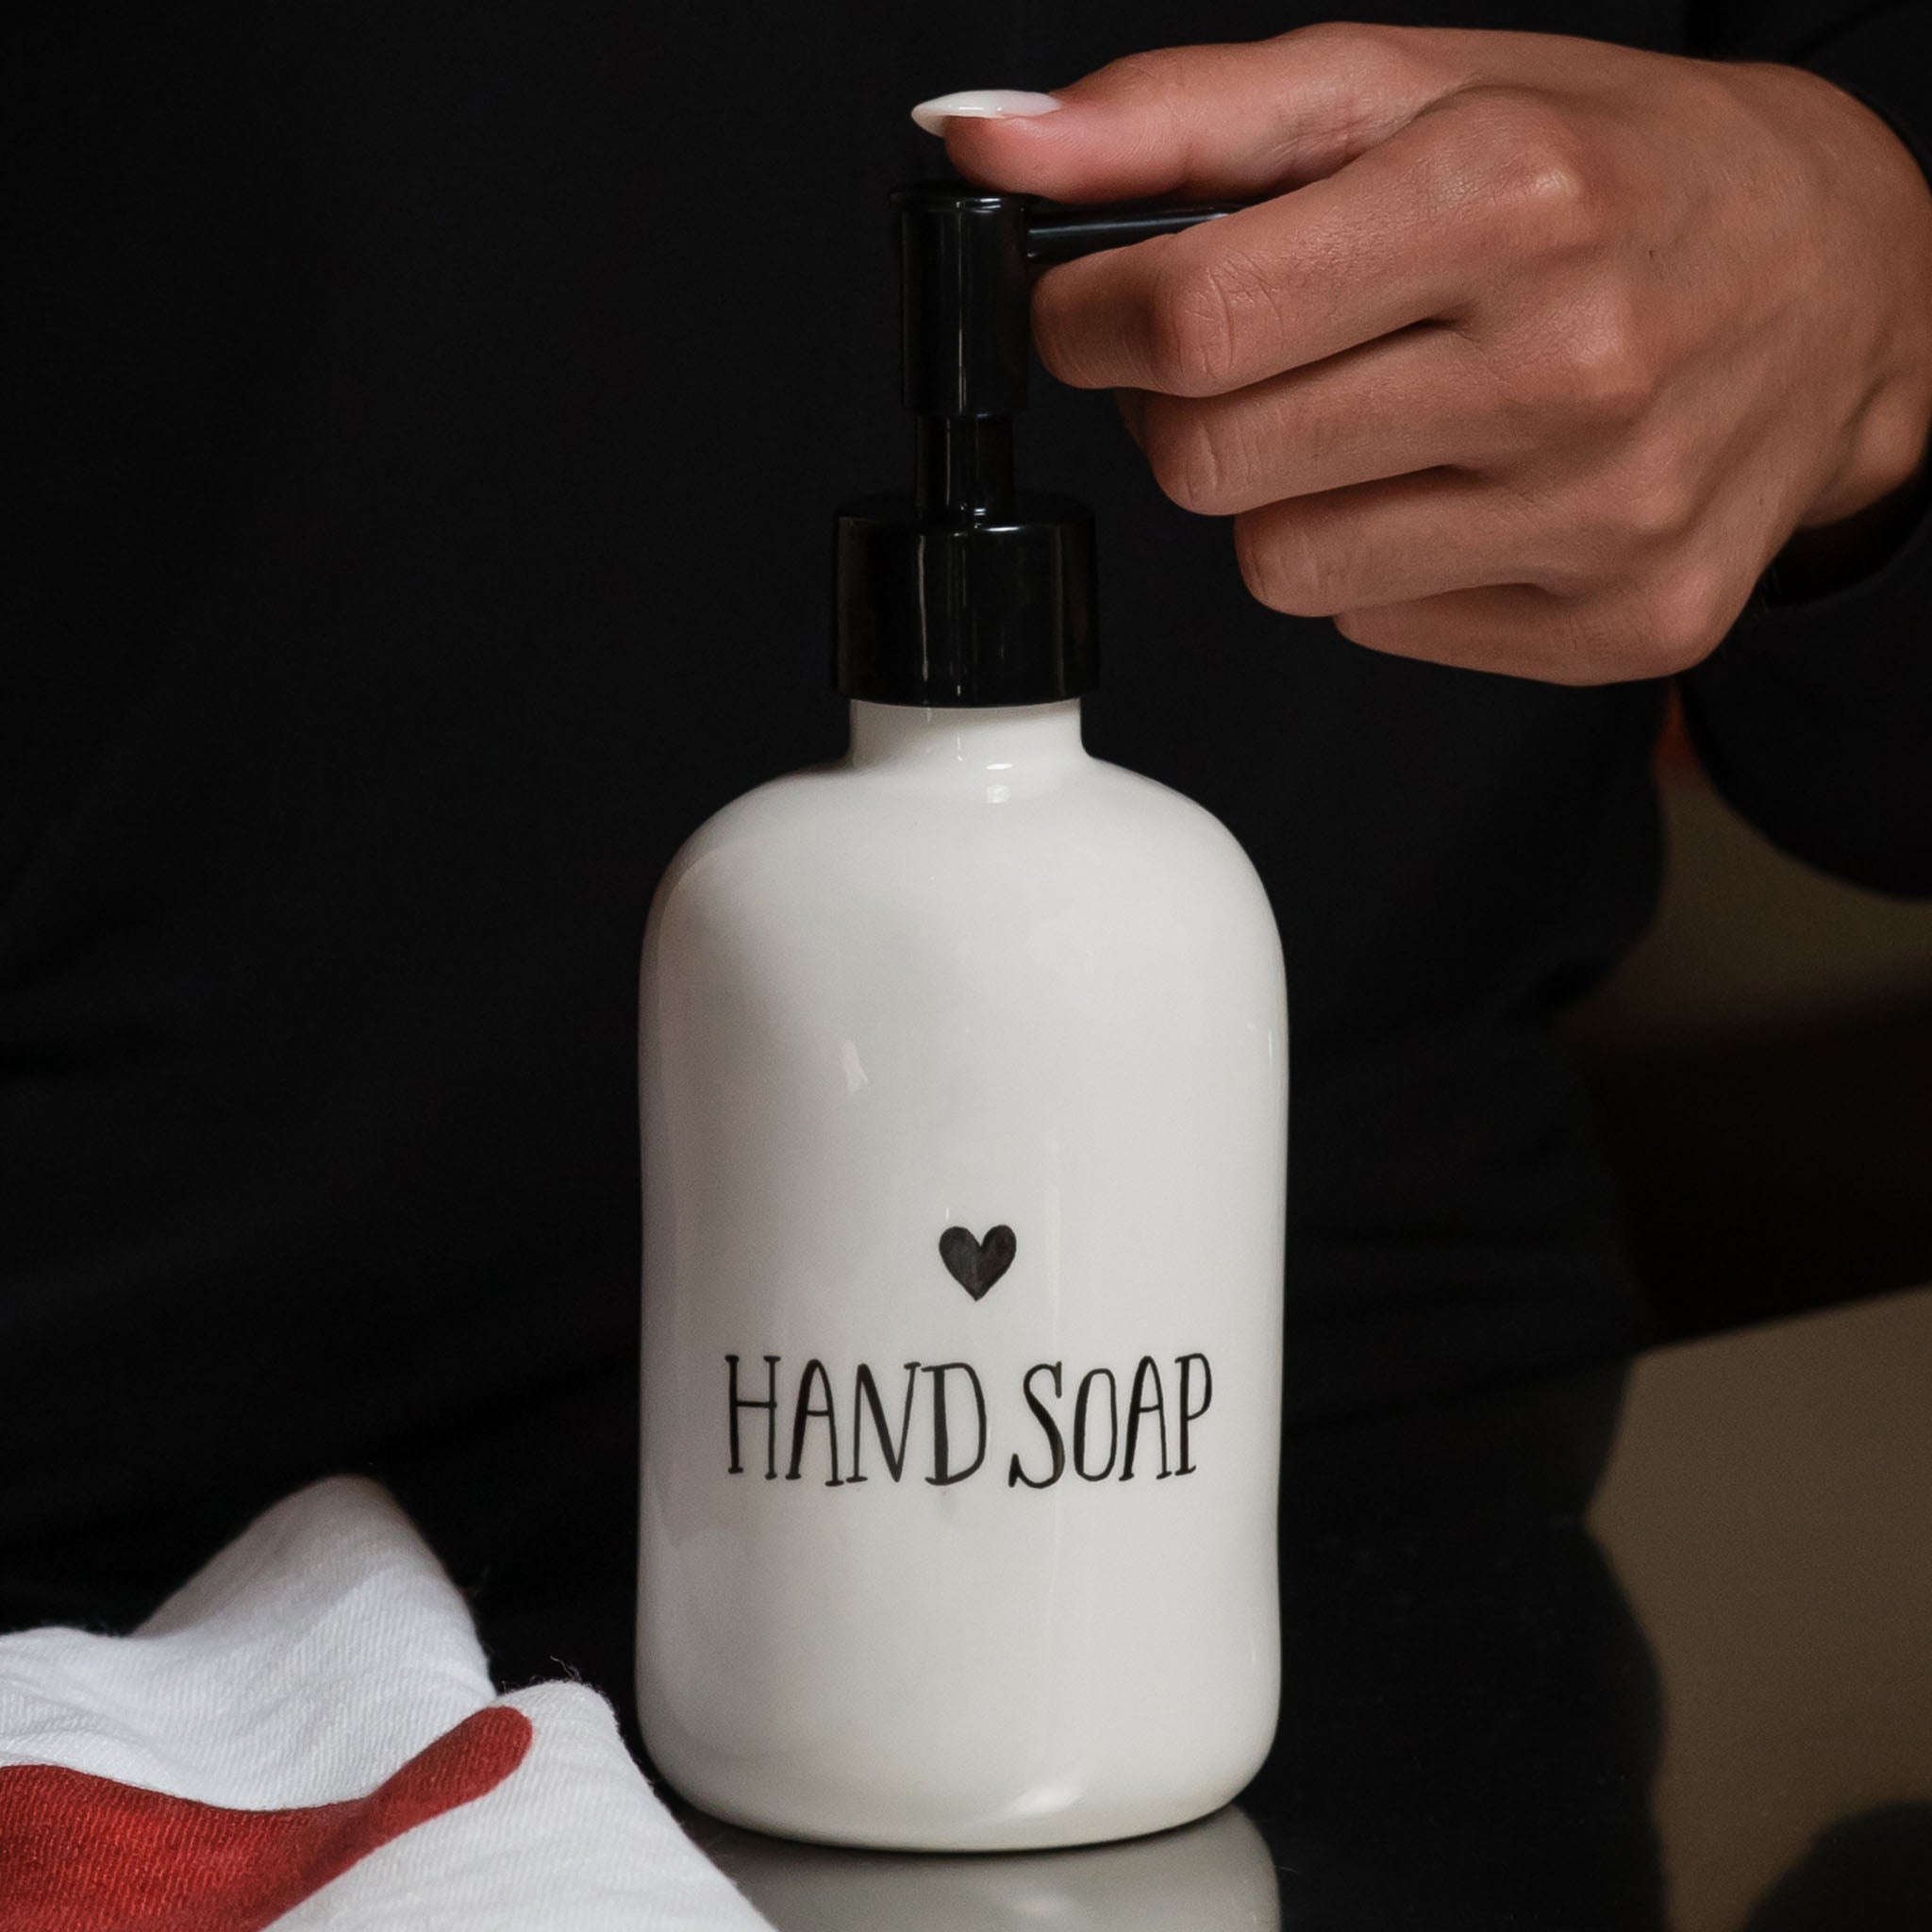 Dosasapona blanca con jabón de decoración de manos